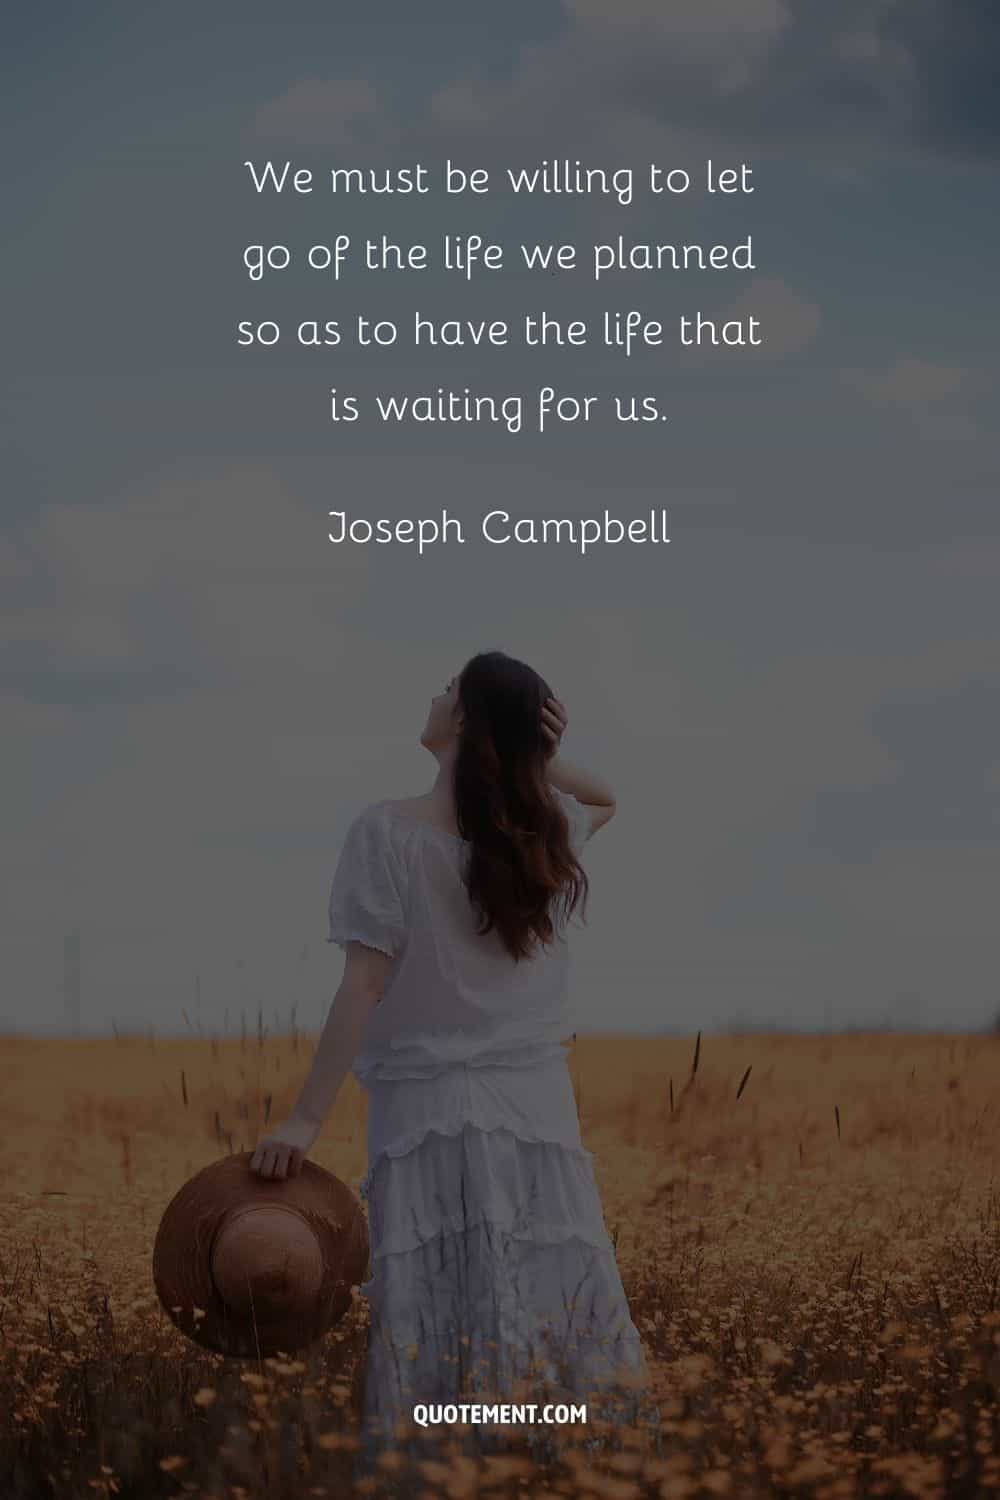 "Debemos estar dispuestos a dejar ir la vida que planeamos para tener la vida que nos espera". - Joseph Campbell